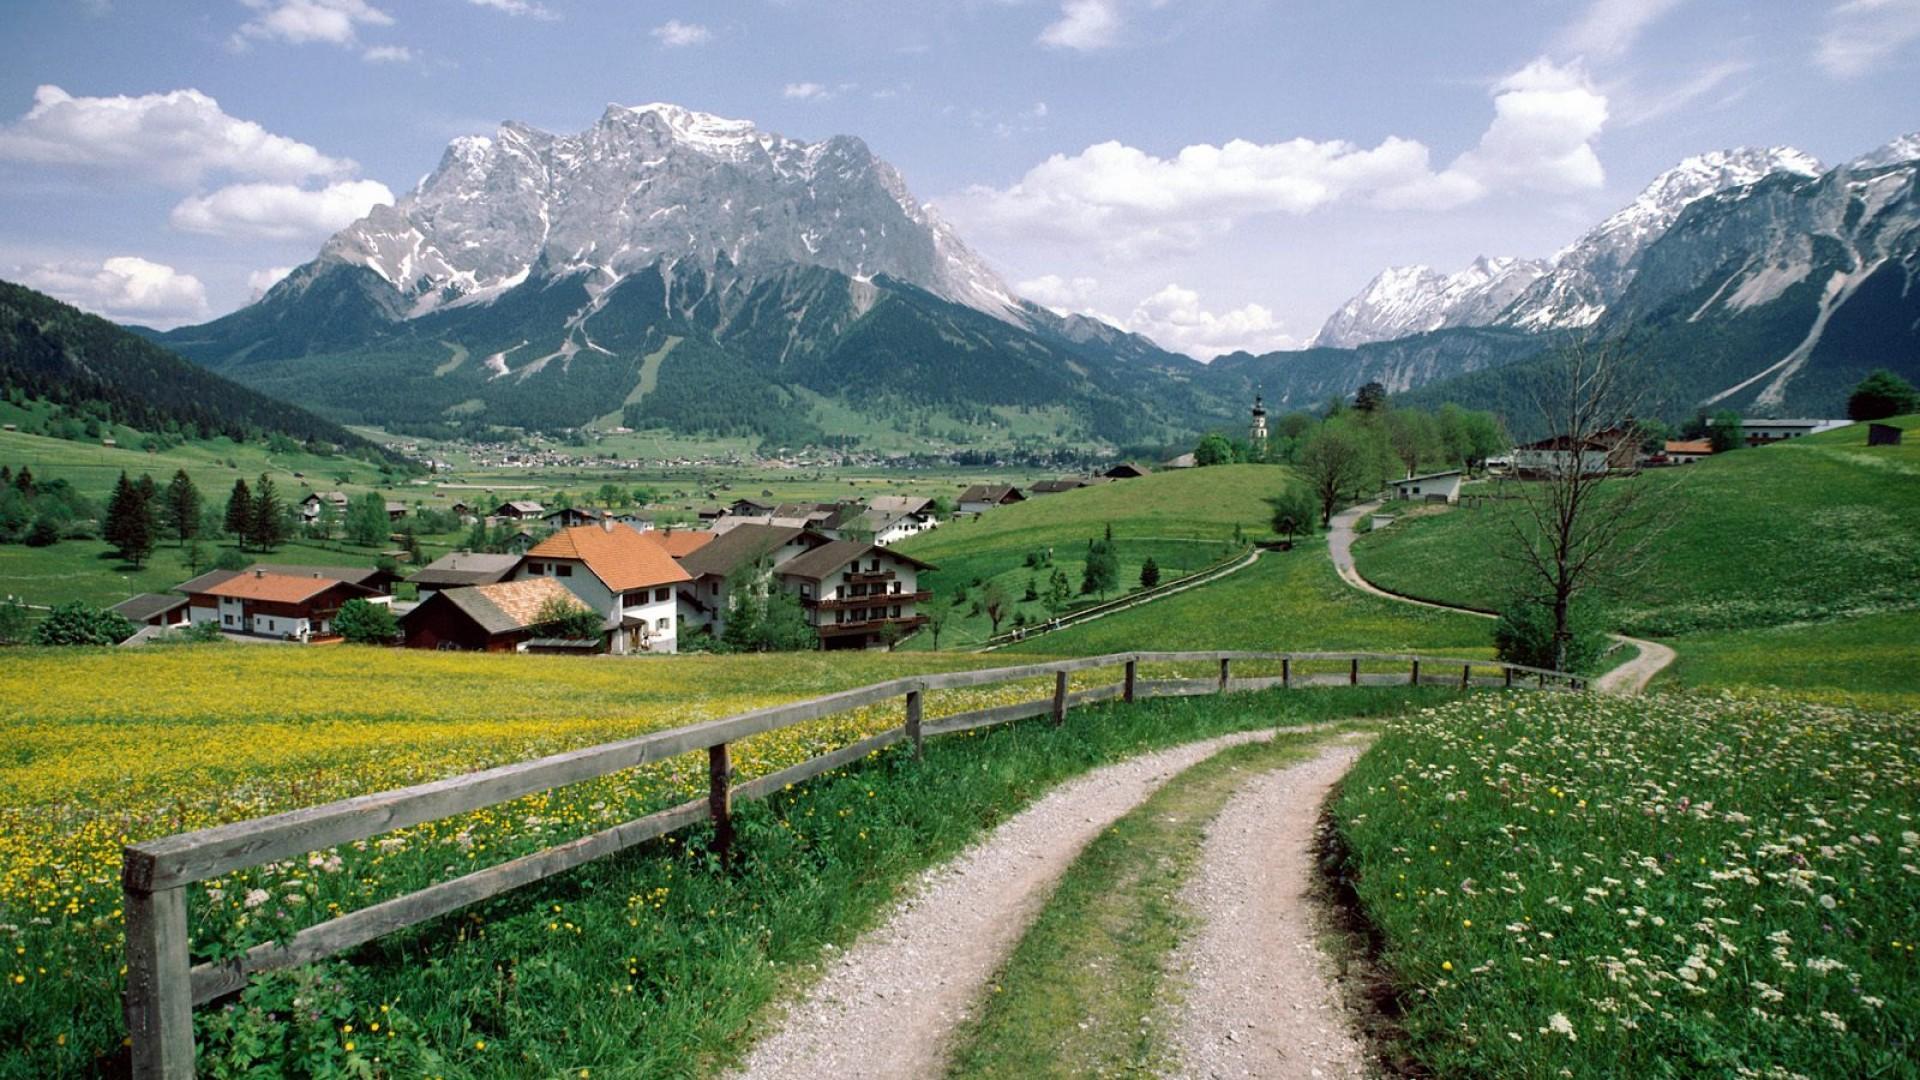 Download 1920x1080 Alpine Village In Austria wallpaper